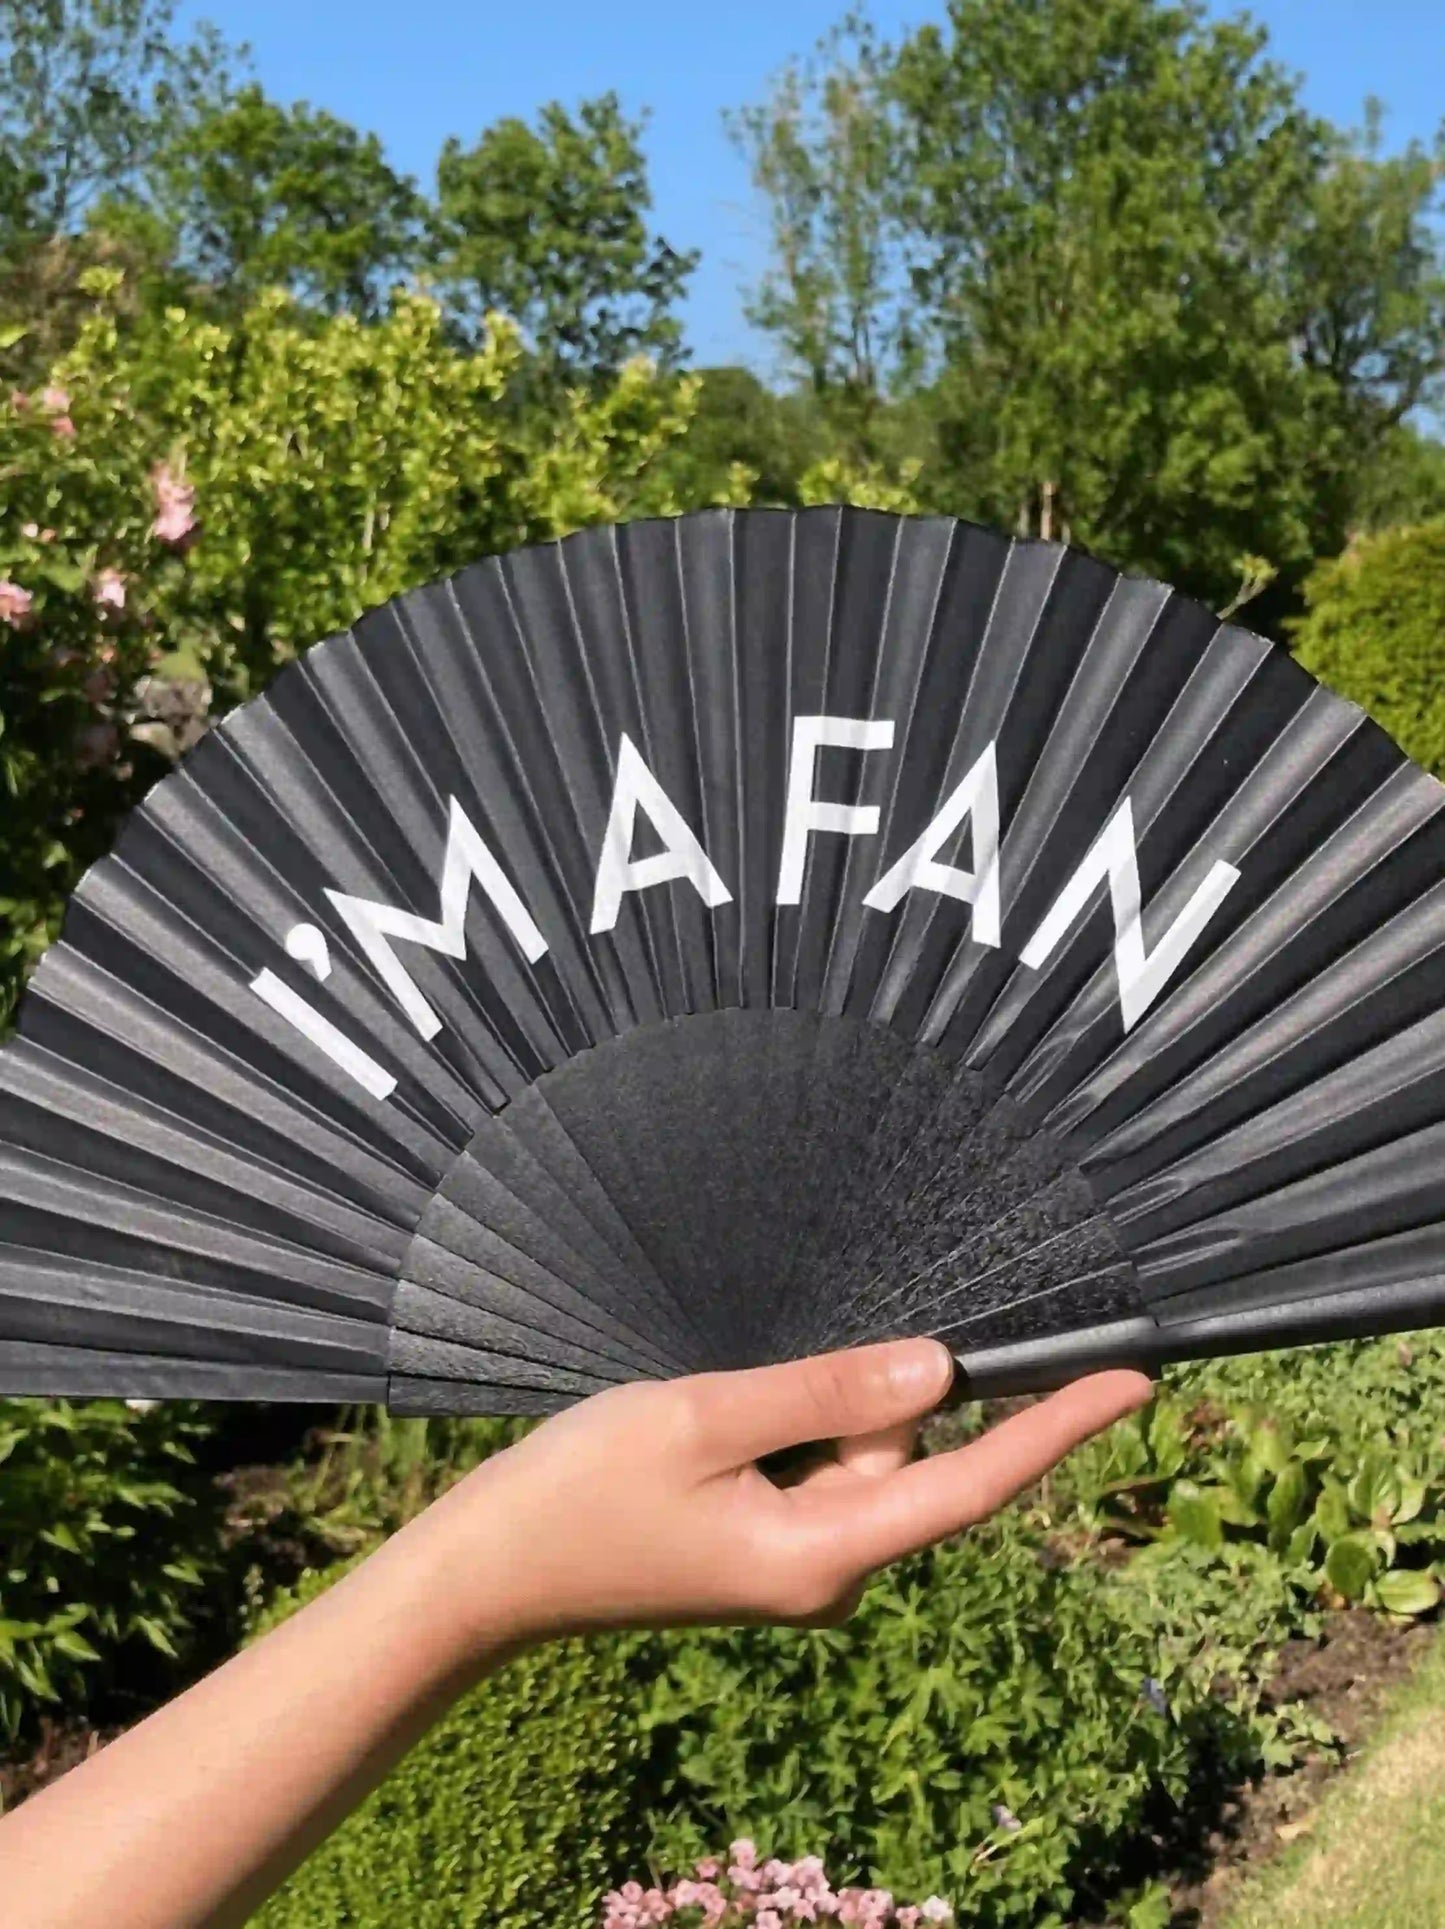 I'm a Fan Hand Fan